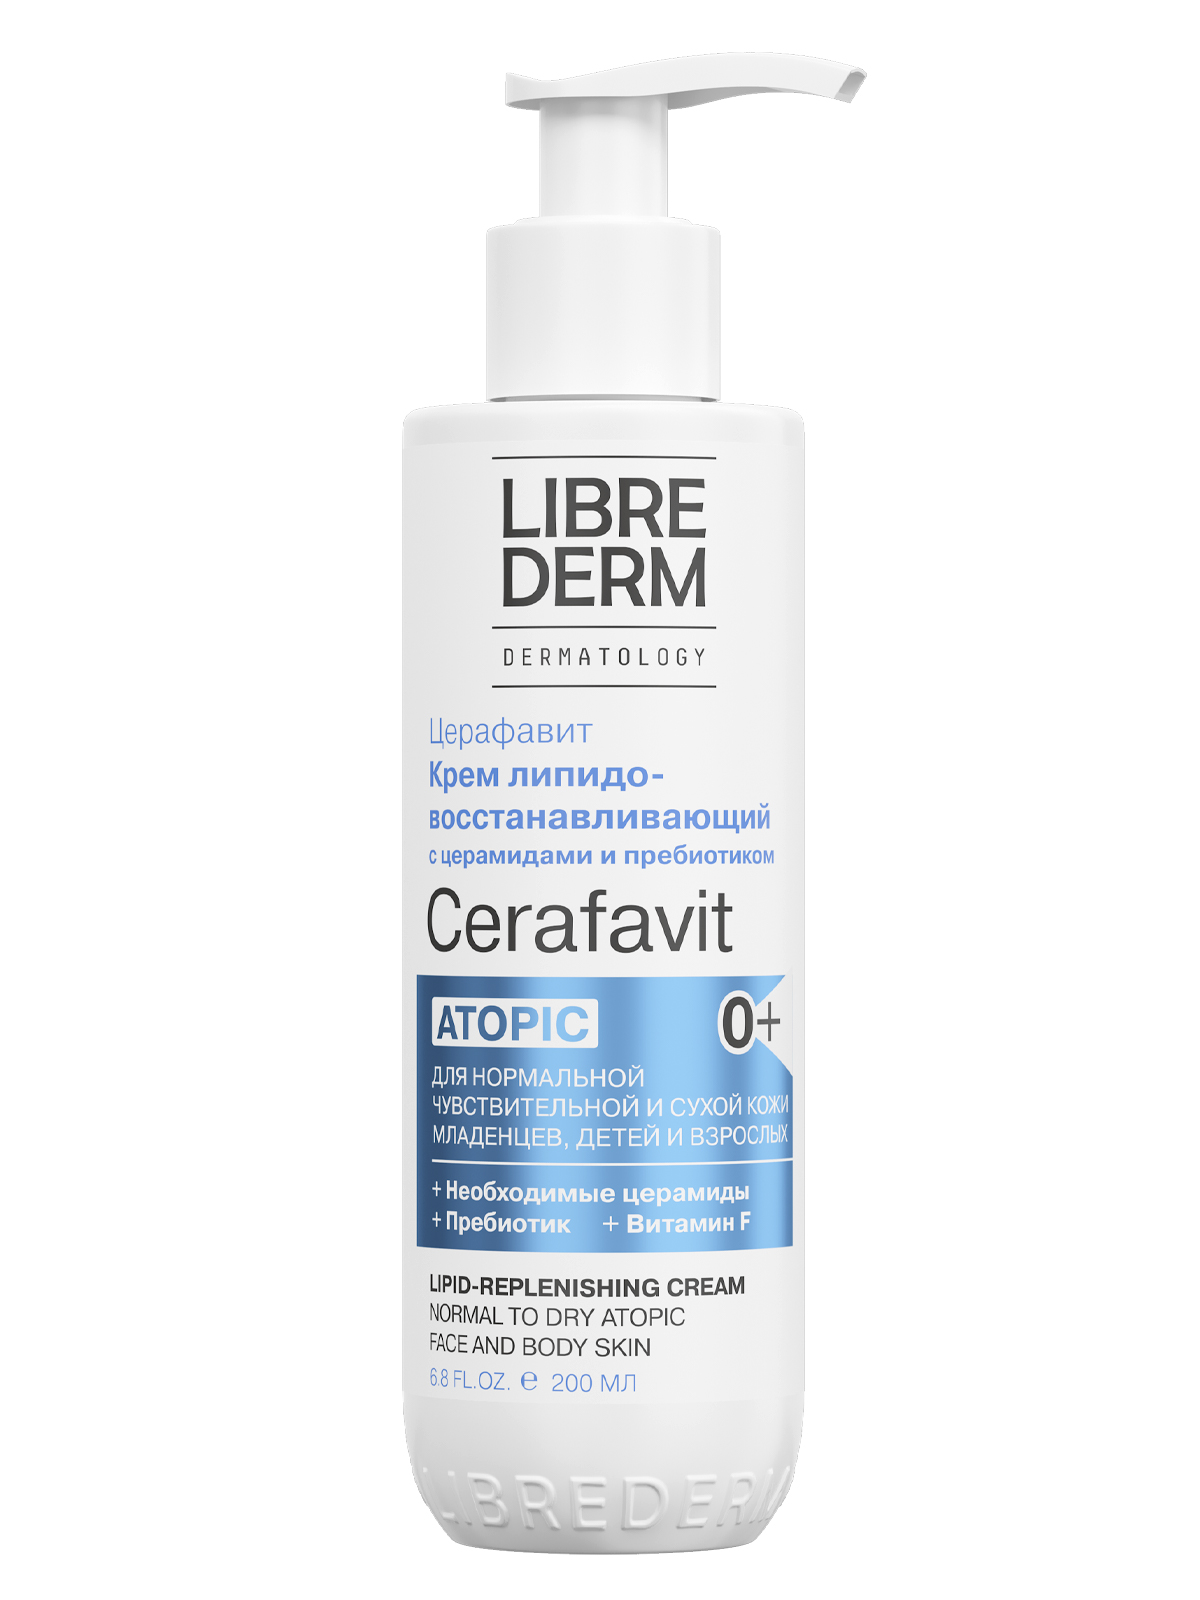 Librederm Cerafavit, крем липидовосстанавливающий с церамидами и пребиотиком для лица и тела, 200 мл